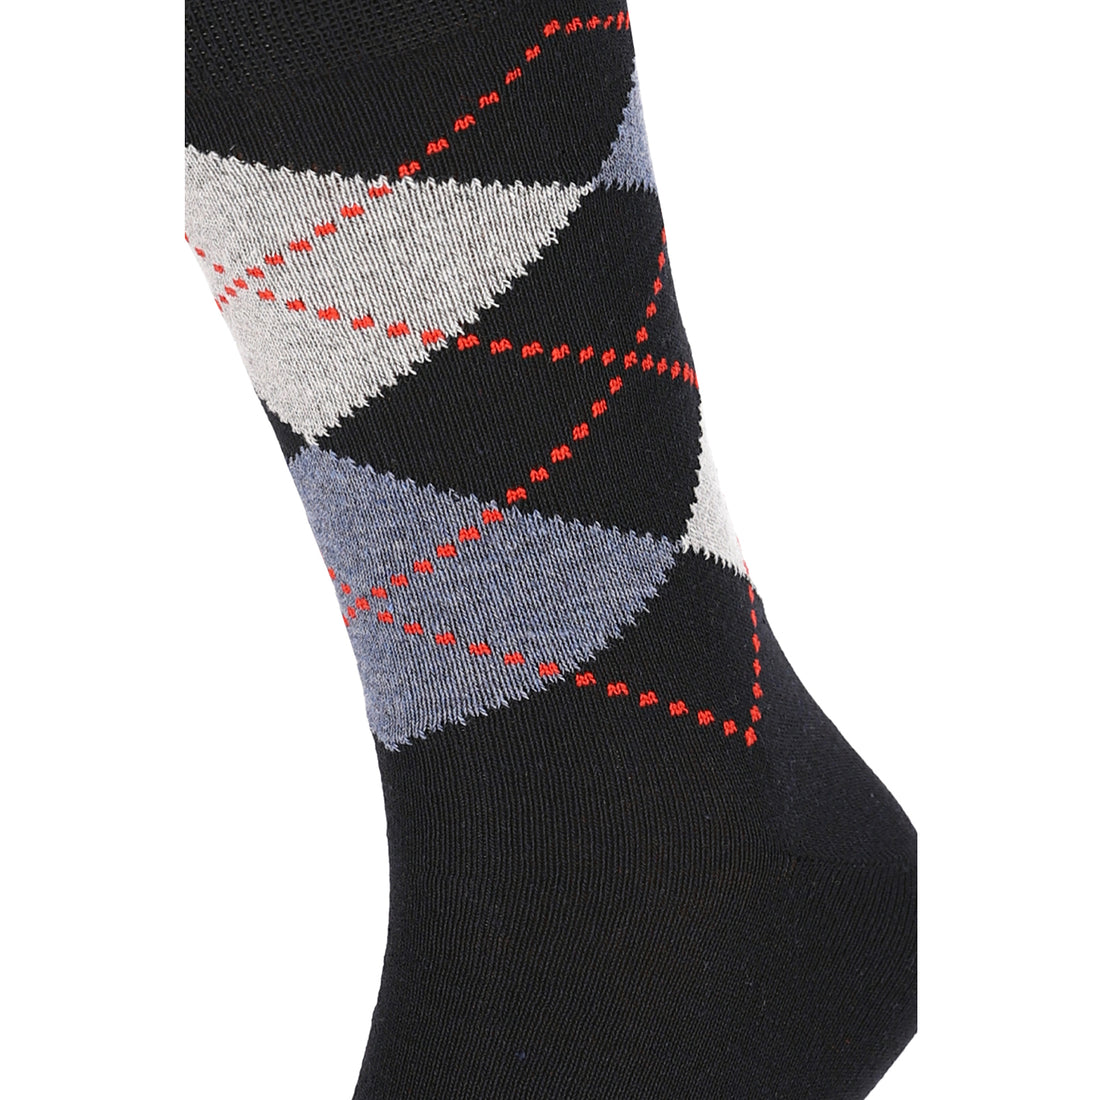 ChiliLifestyle Socken Karo Design, 10 Paar, Damen, Herren, Baumwolle